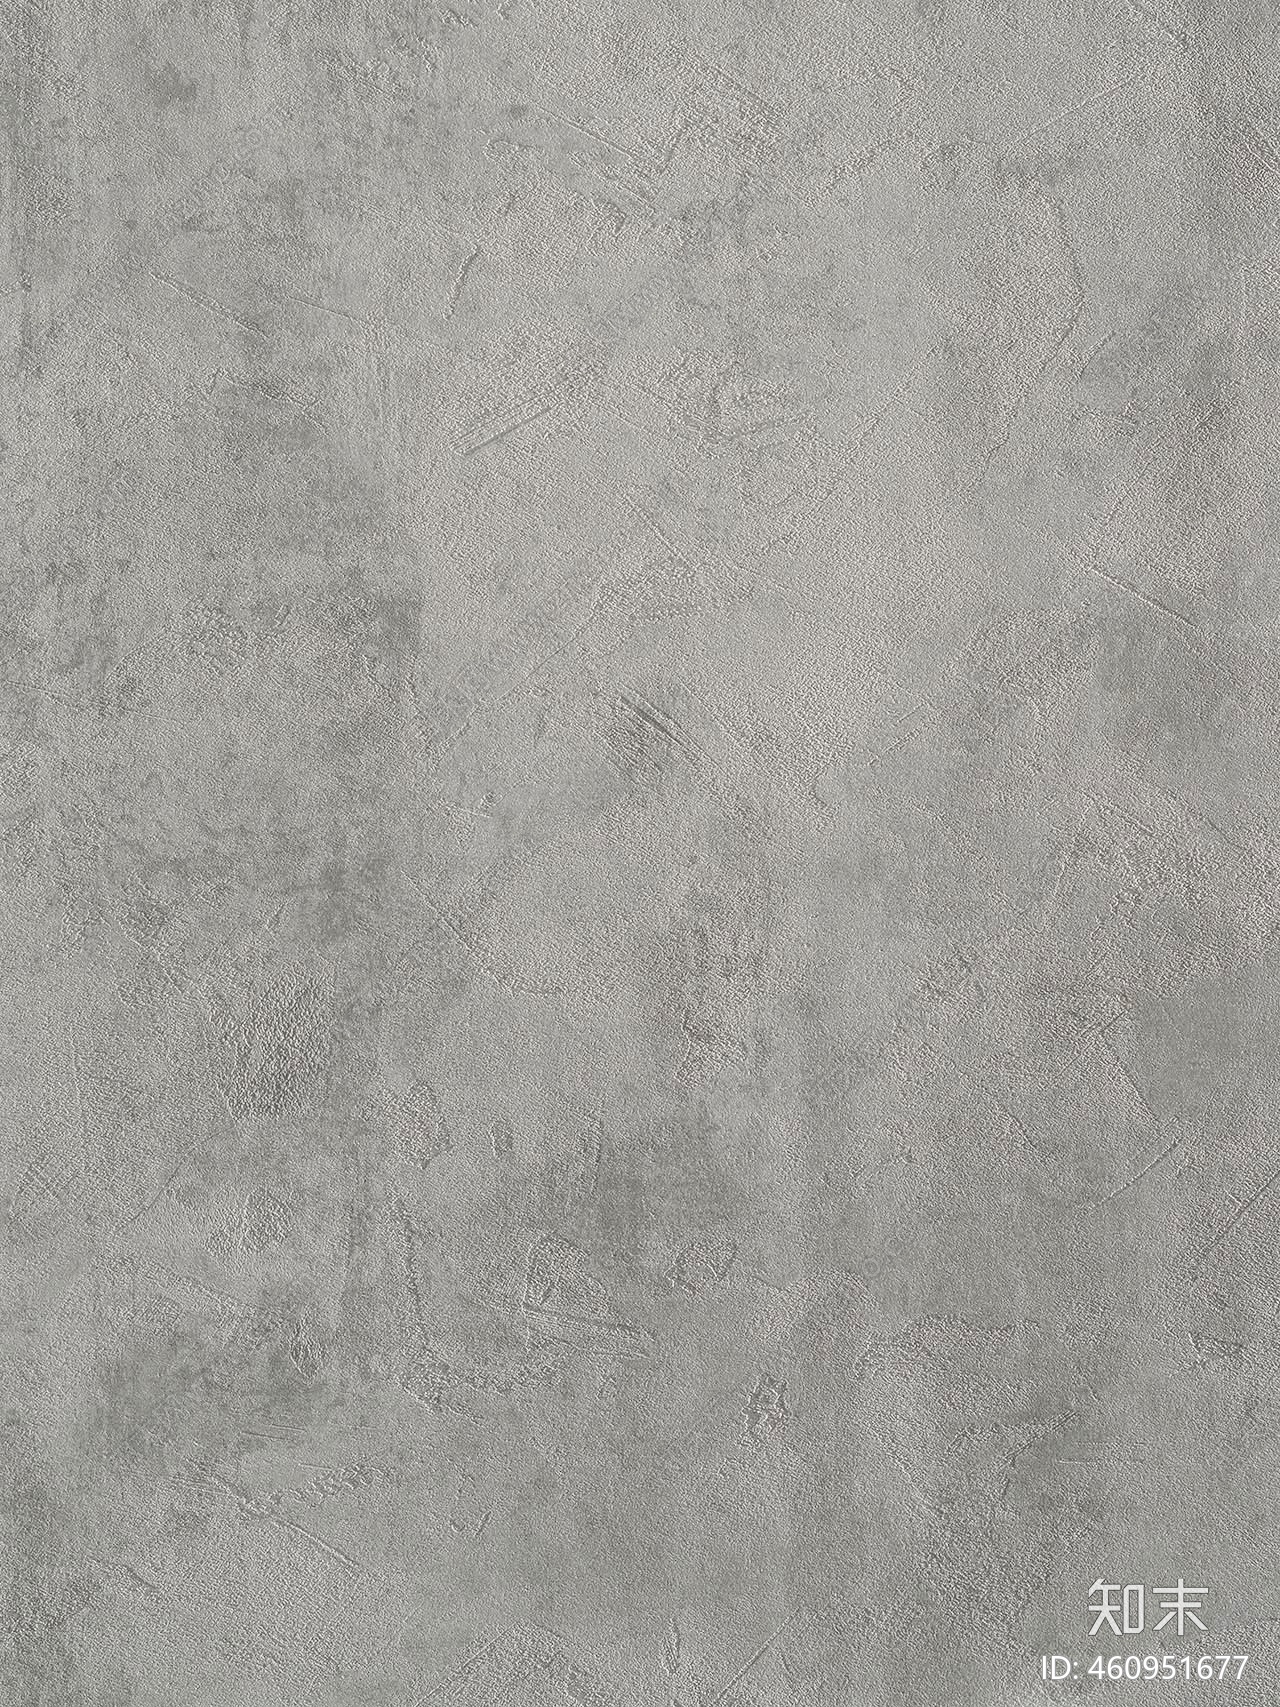 墙面浅灰混凝土墙面水泥细缝清水混凝土贴图水泥纹理贴图高清灰色水泥